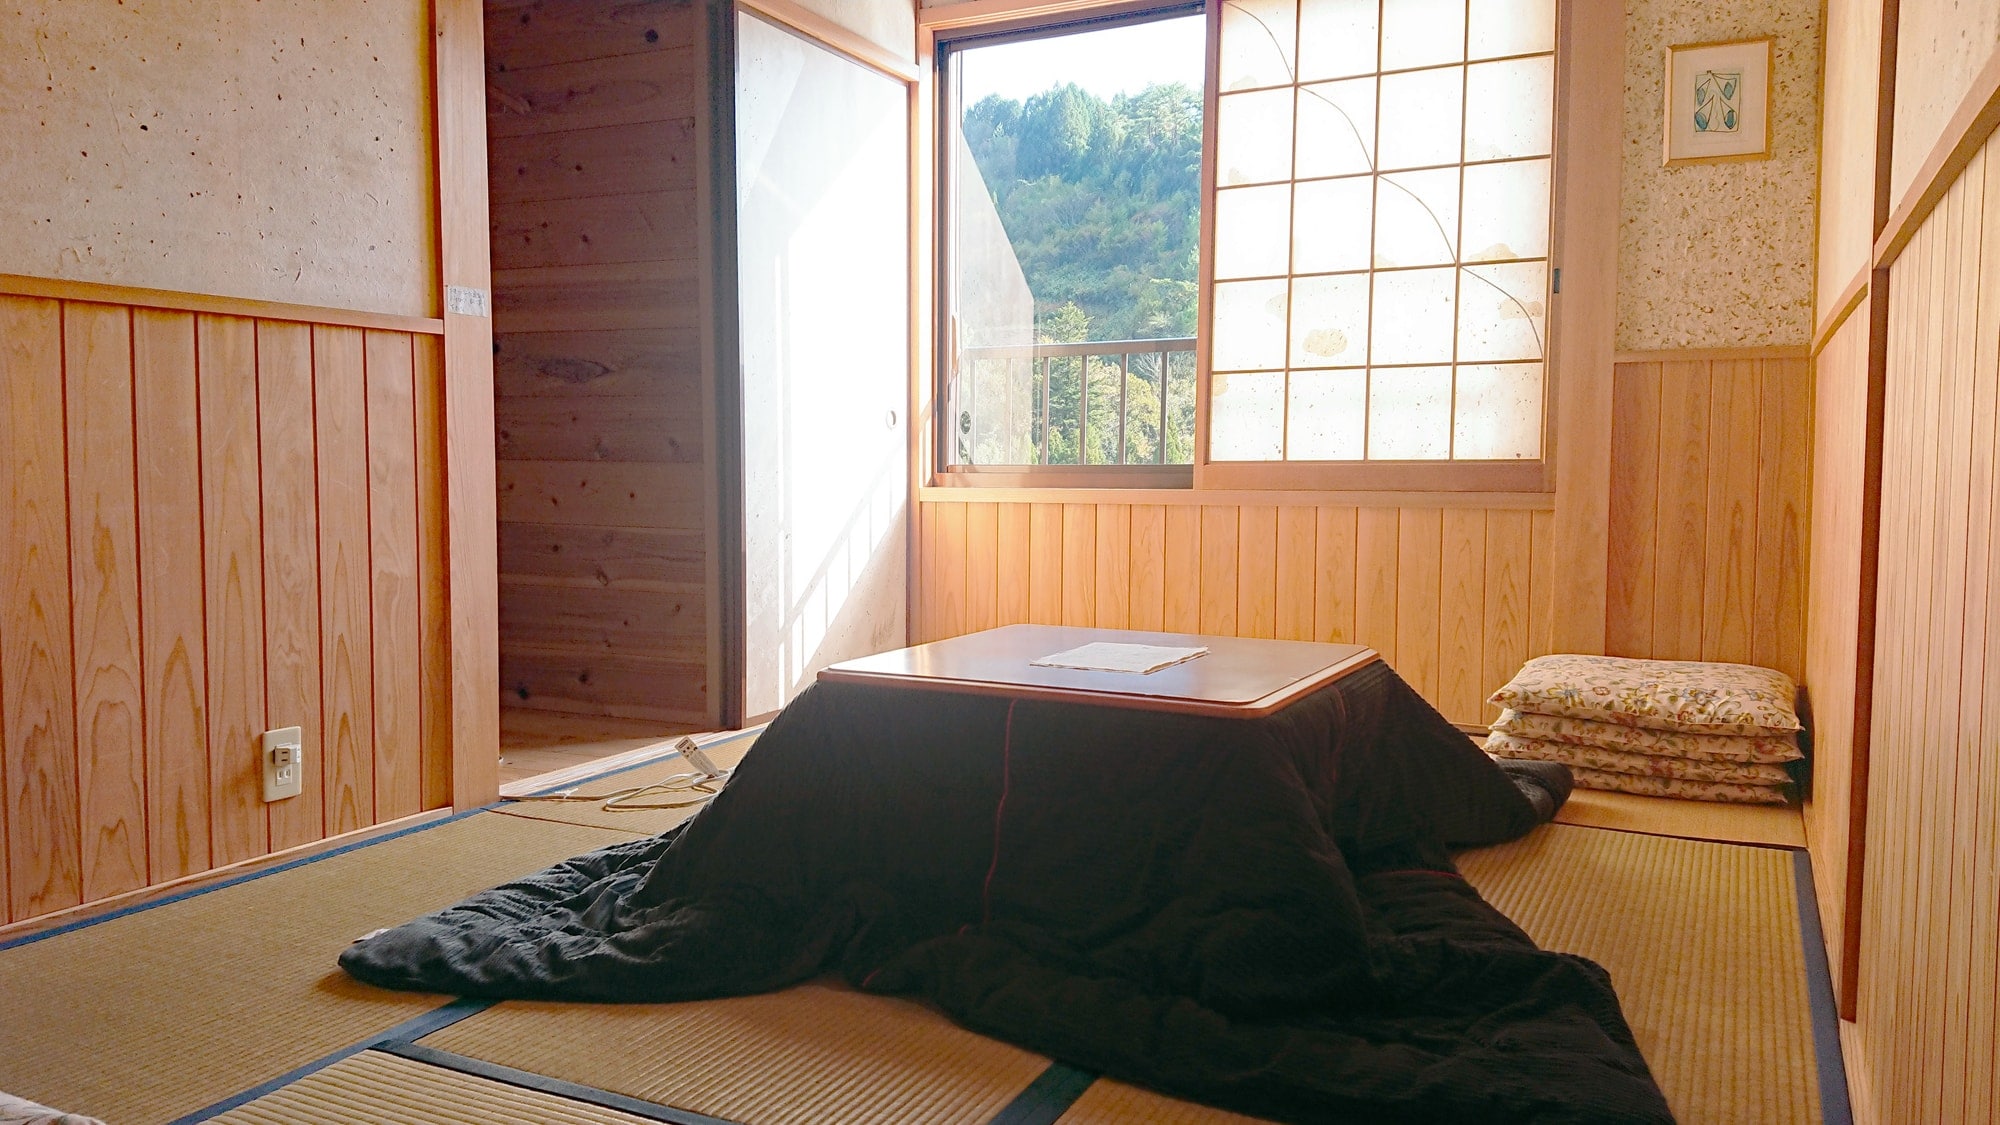 【客房】有6张榻榻米日式房间和8张榻榻米日式房间两个独立房间。